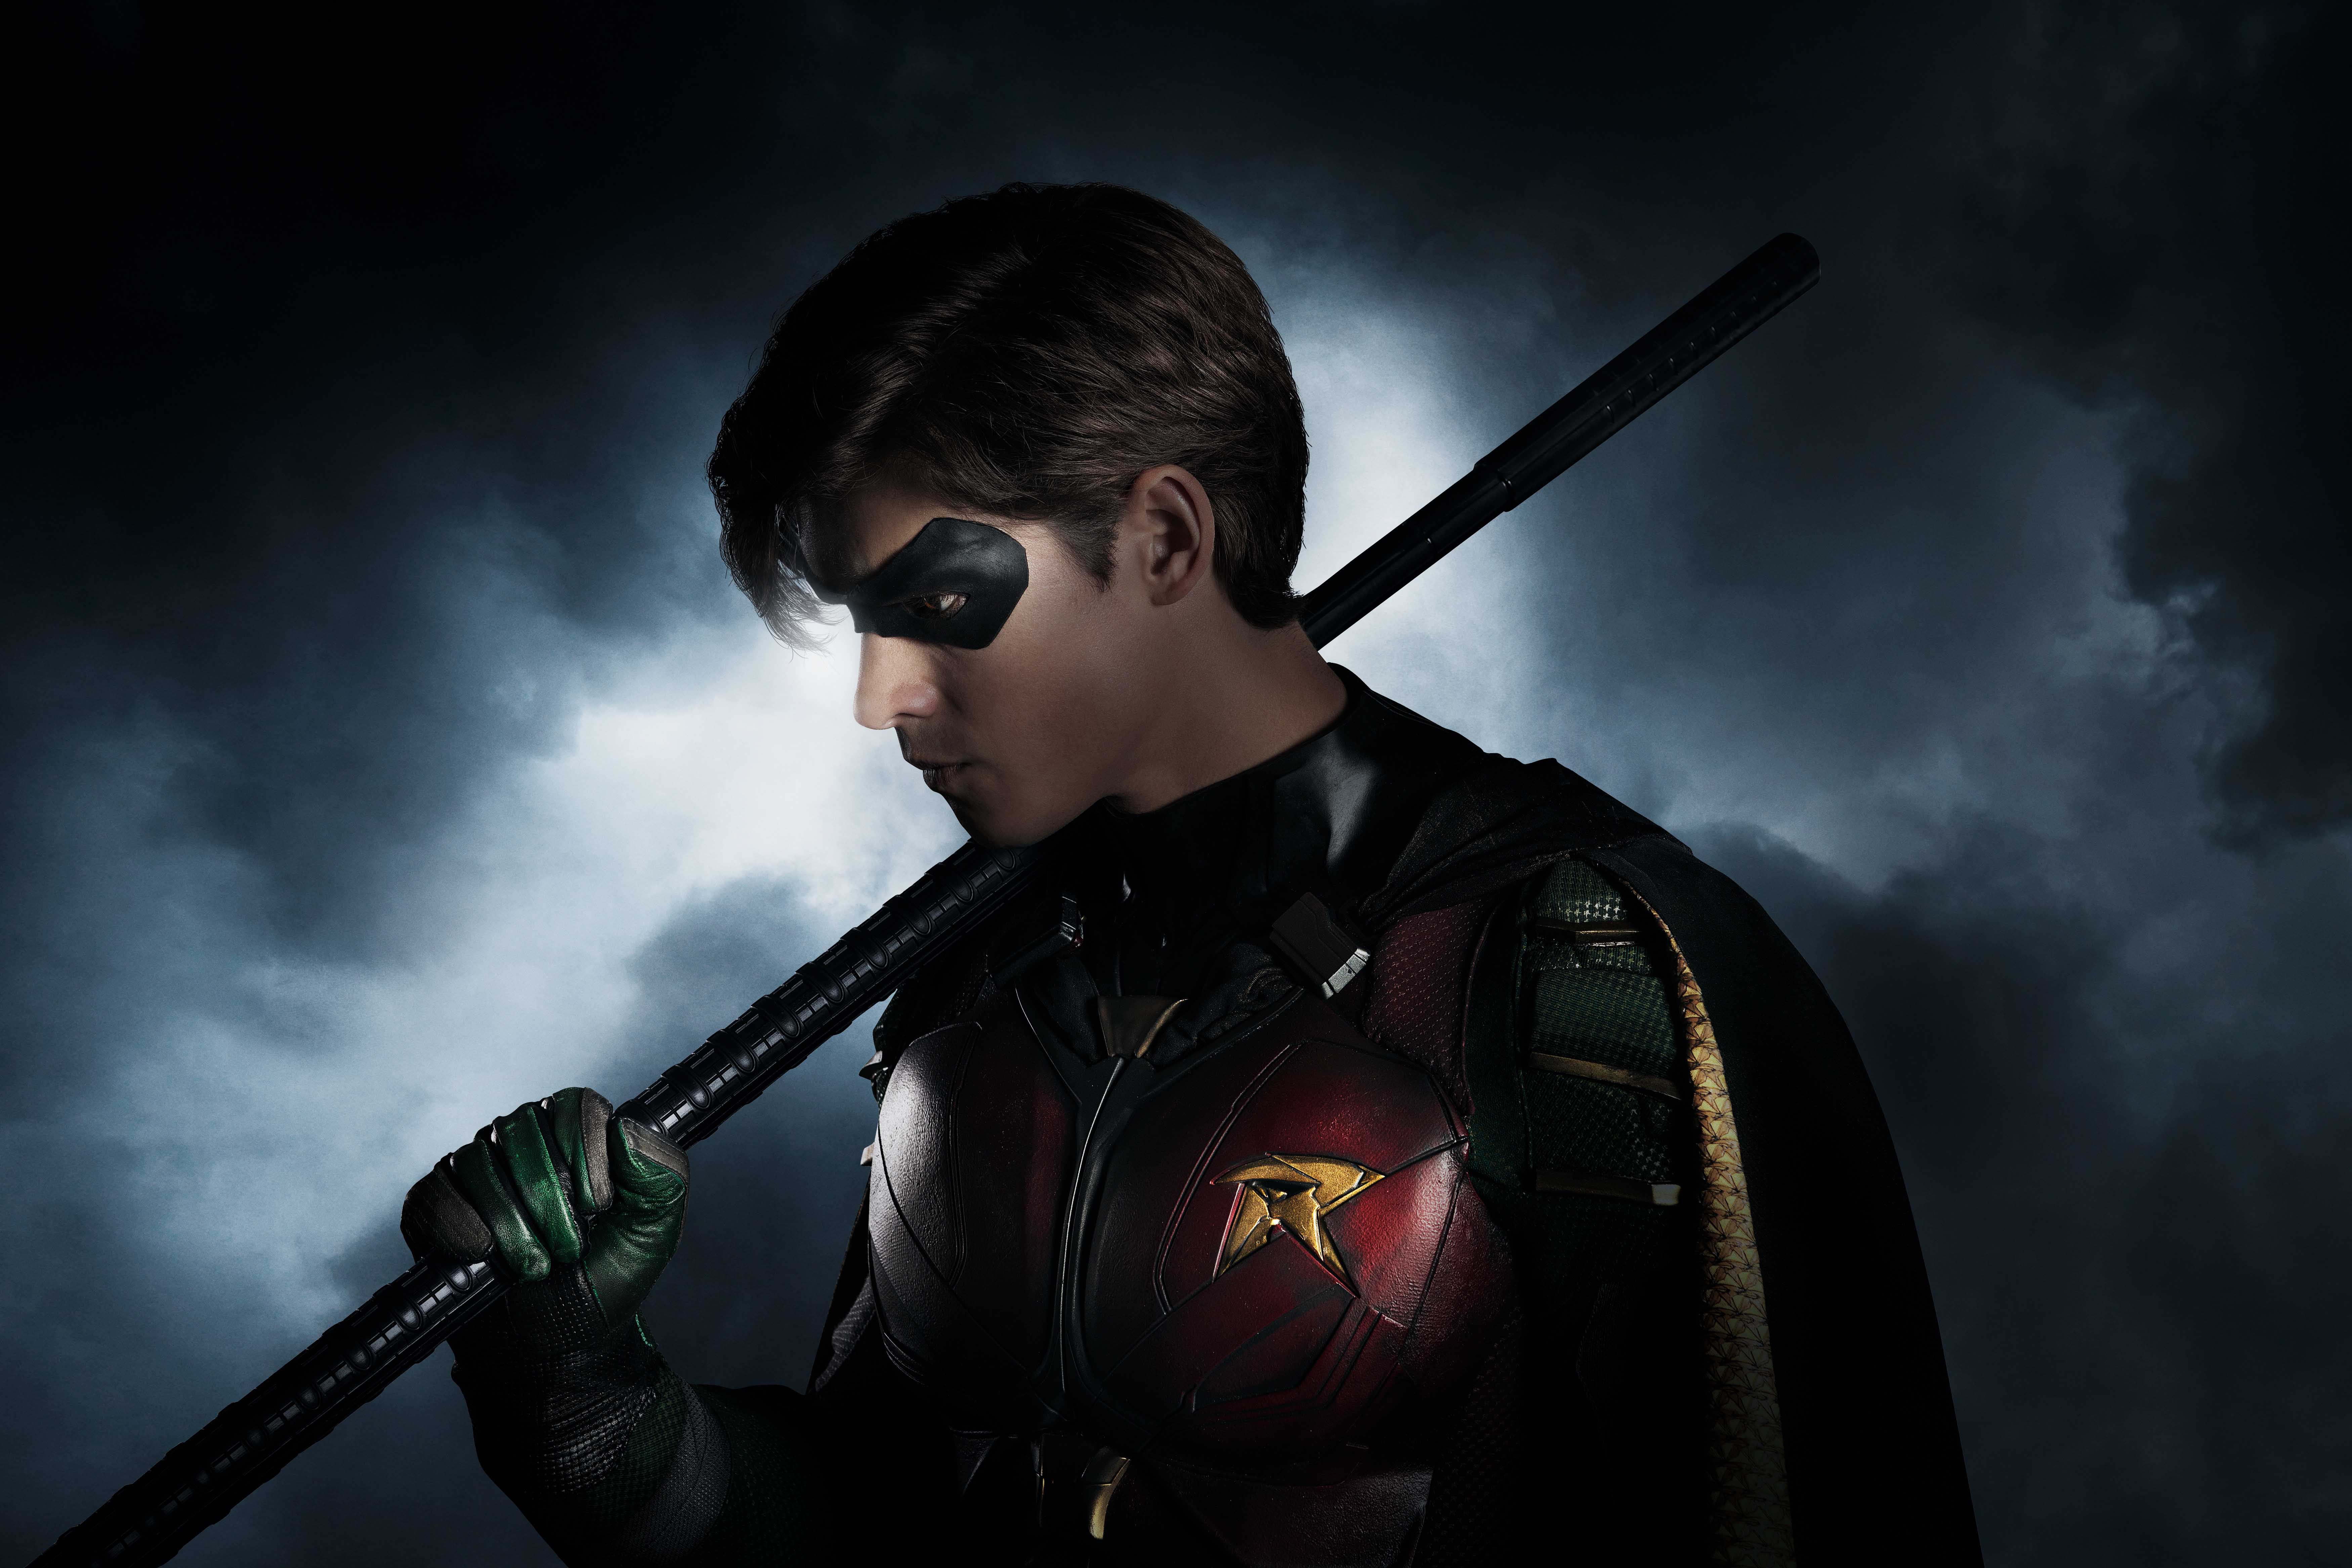 Brenton Thwaites as Robin in "Titans"